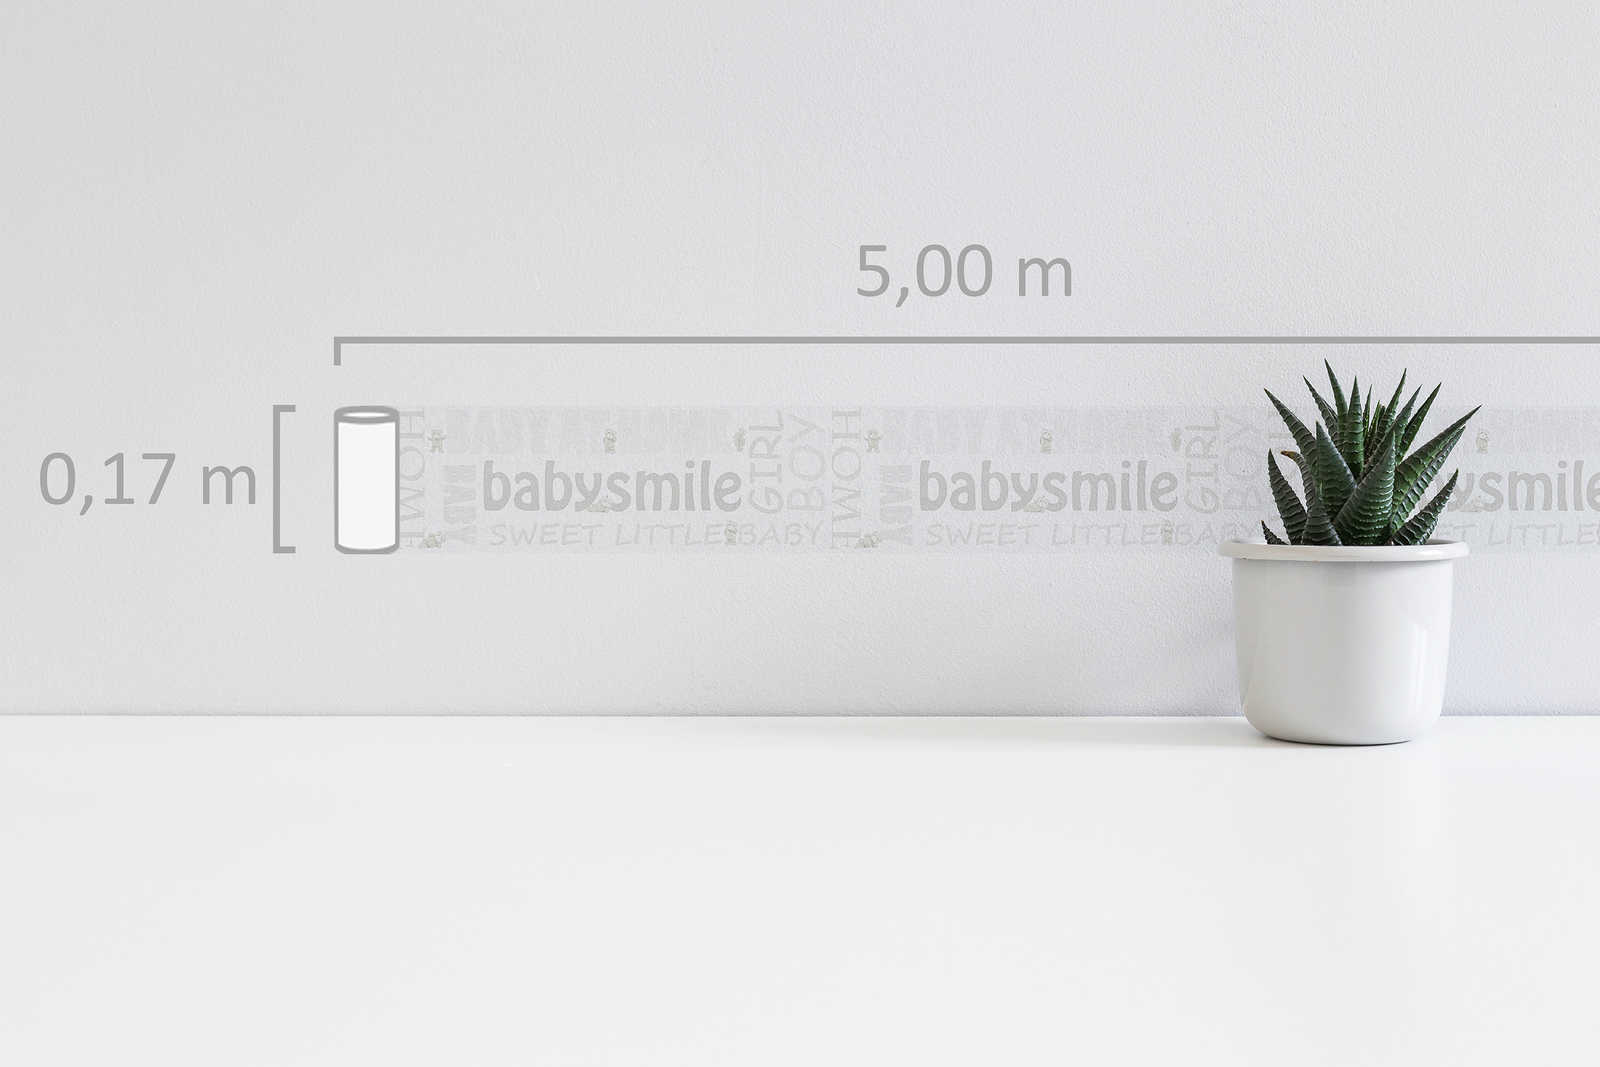             Nursery border Baby Smile with metallic effect - White
        